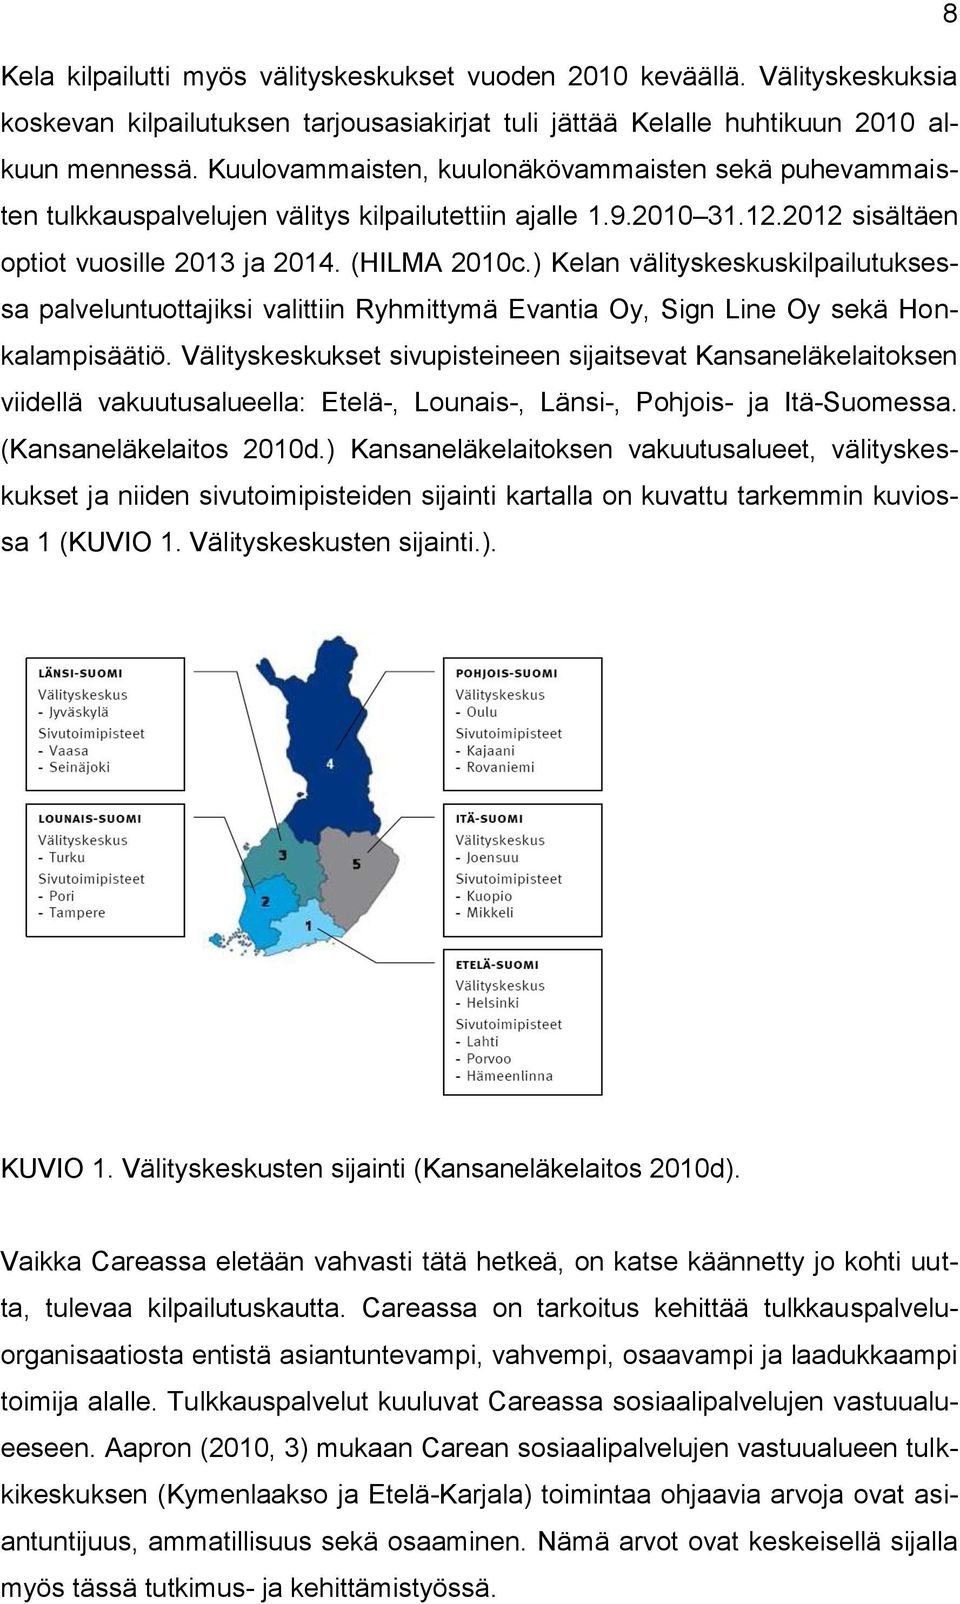 ) Kelan välityskeskuskilpailutuksessa palveluntuottajiksi valittiin Ryhmittymä Evantia Oy, Sign Line Oy sekä Honkalampisäätiö.